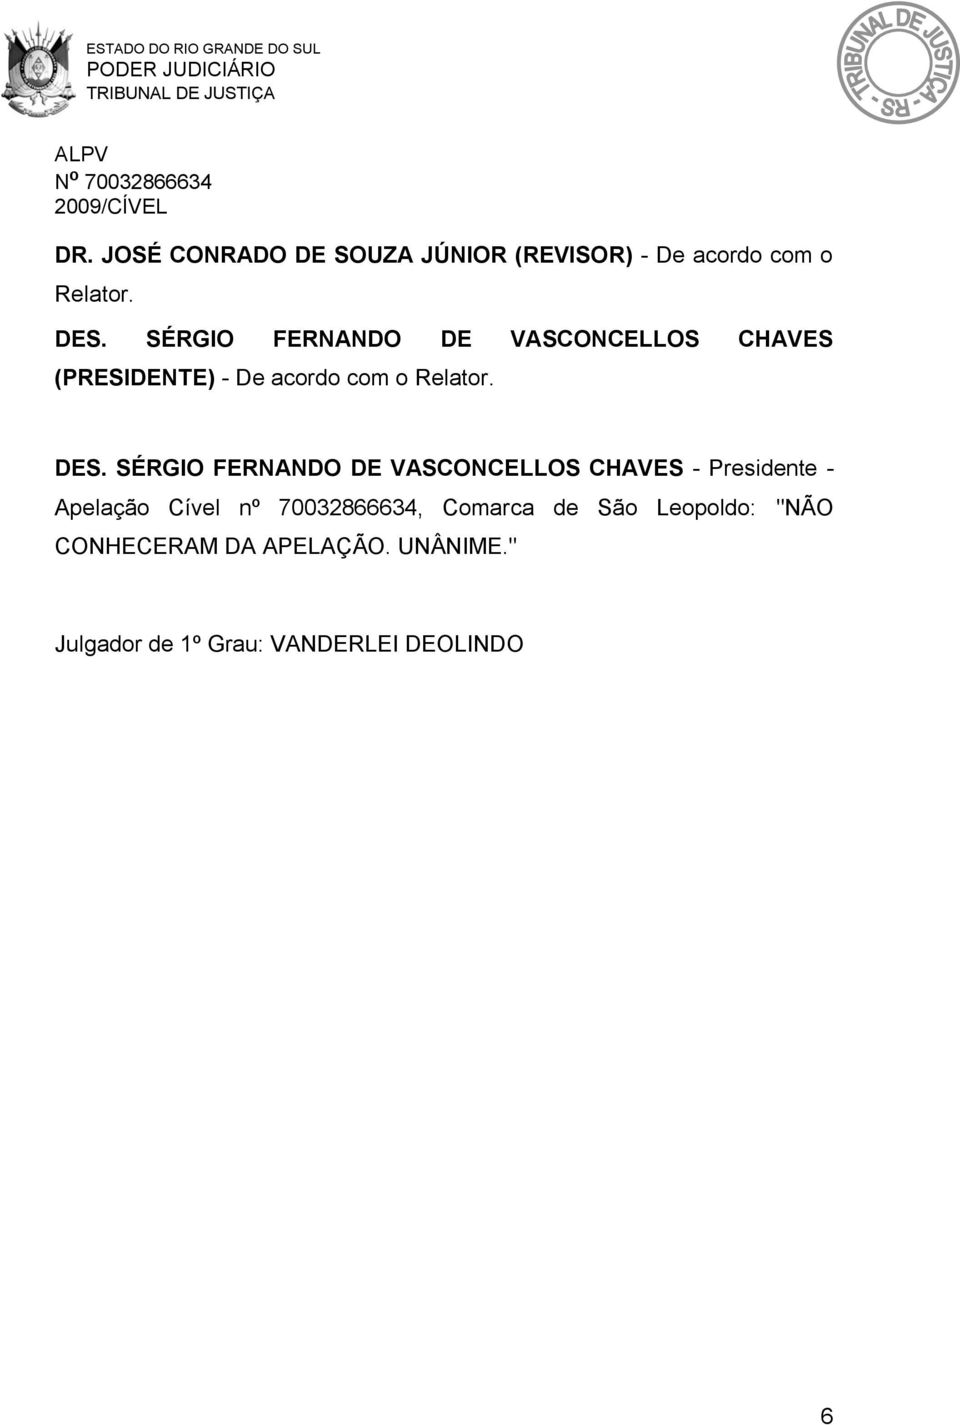 SÉRGIO FERNANDO DE VASCONCELLOS CHAVES - Presidente - Apelação Cível nº 70032866634,